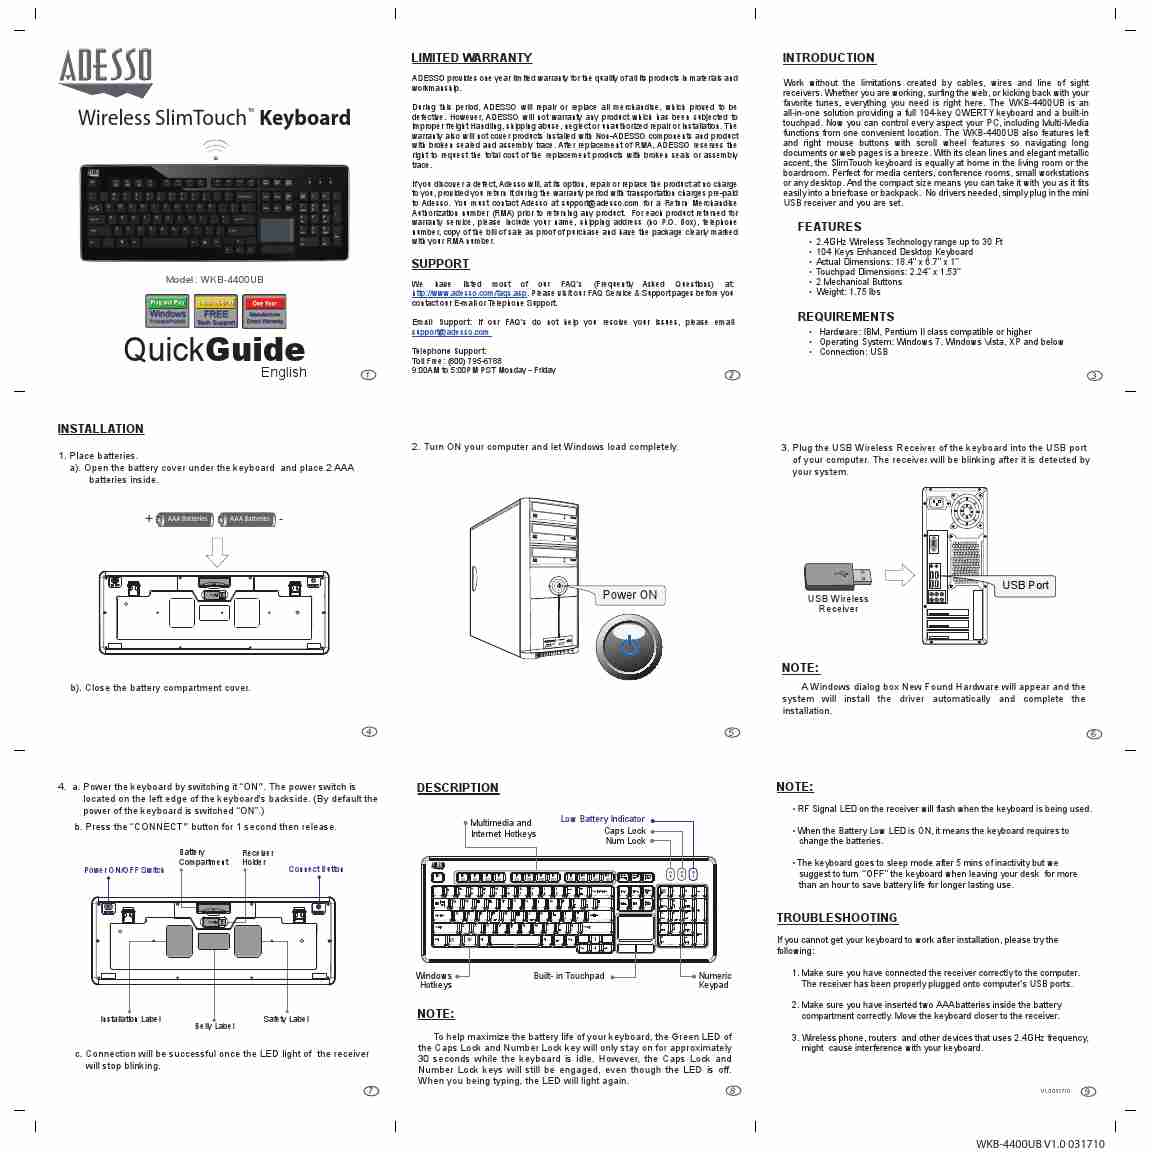 ADESSO WIRELESS SLIMTOUCH WKB-4400UB-page_pdf